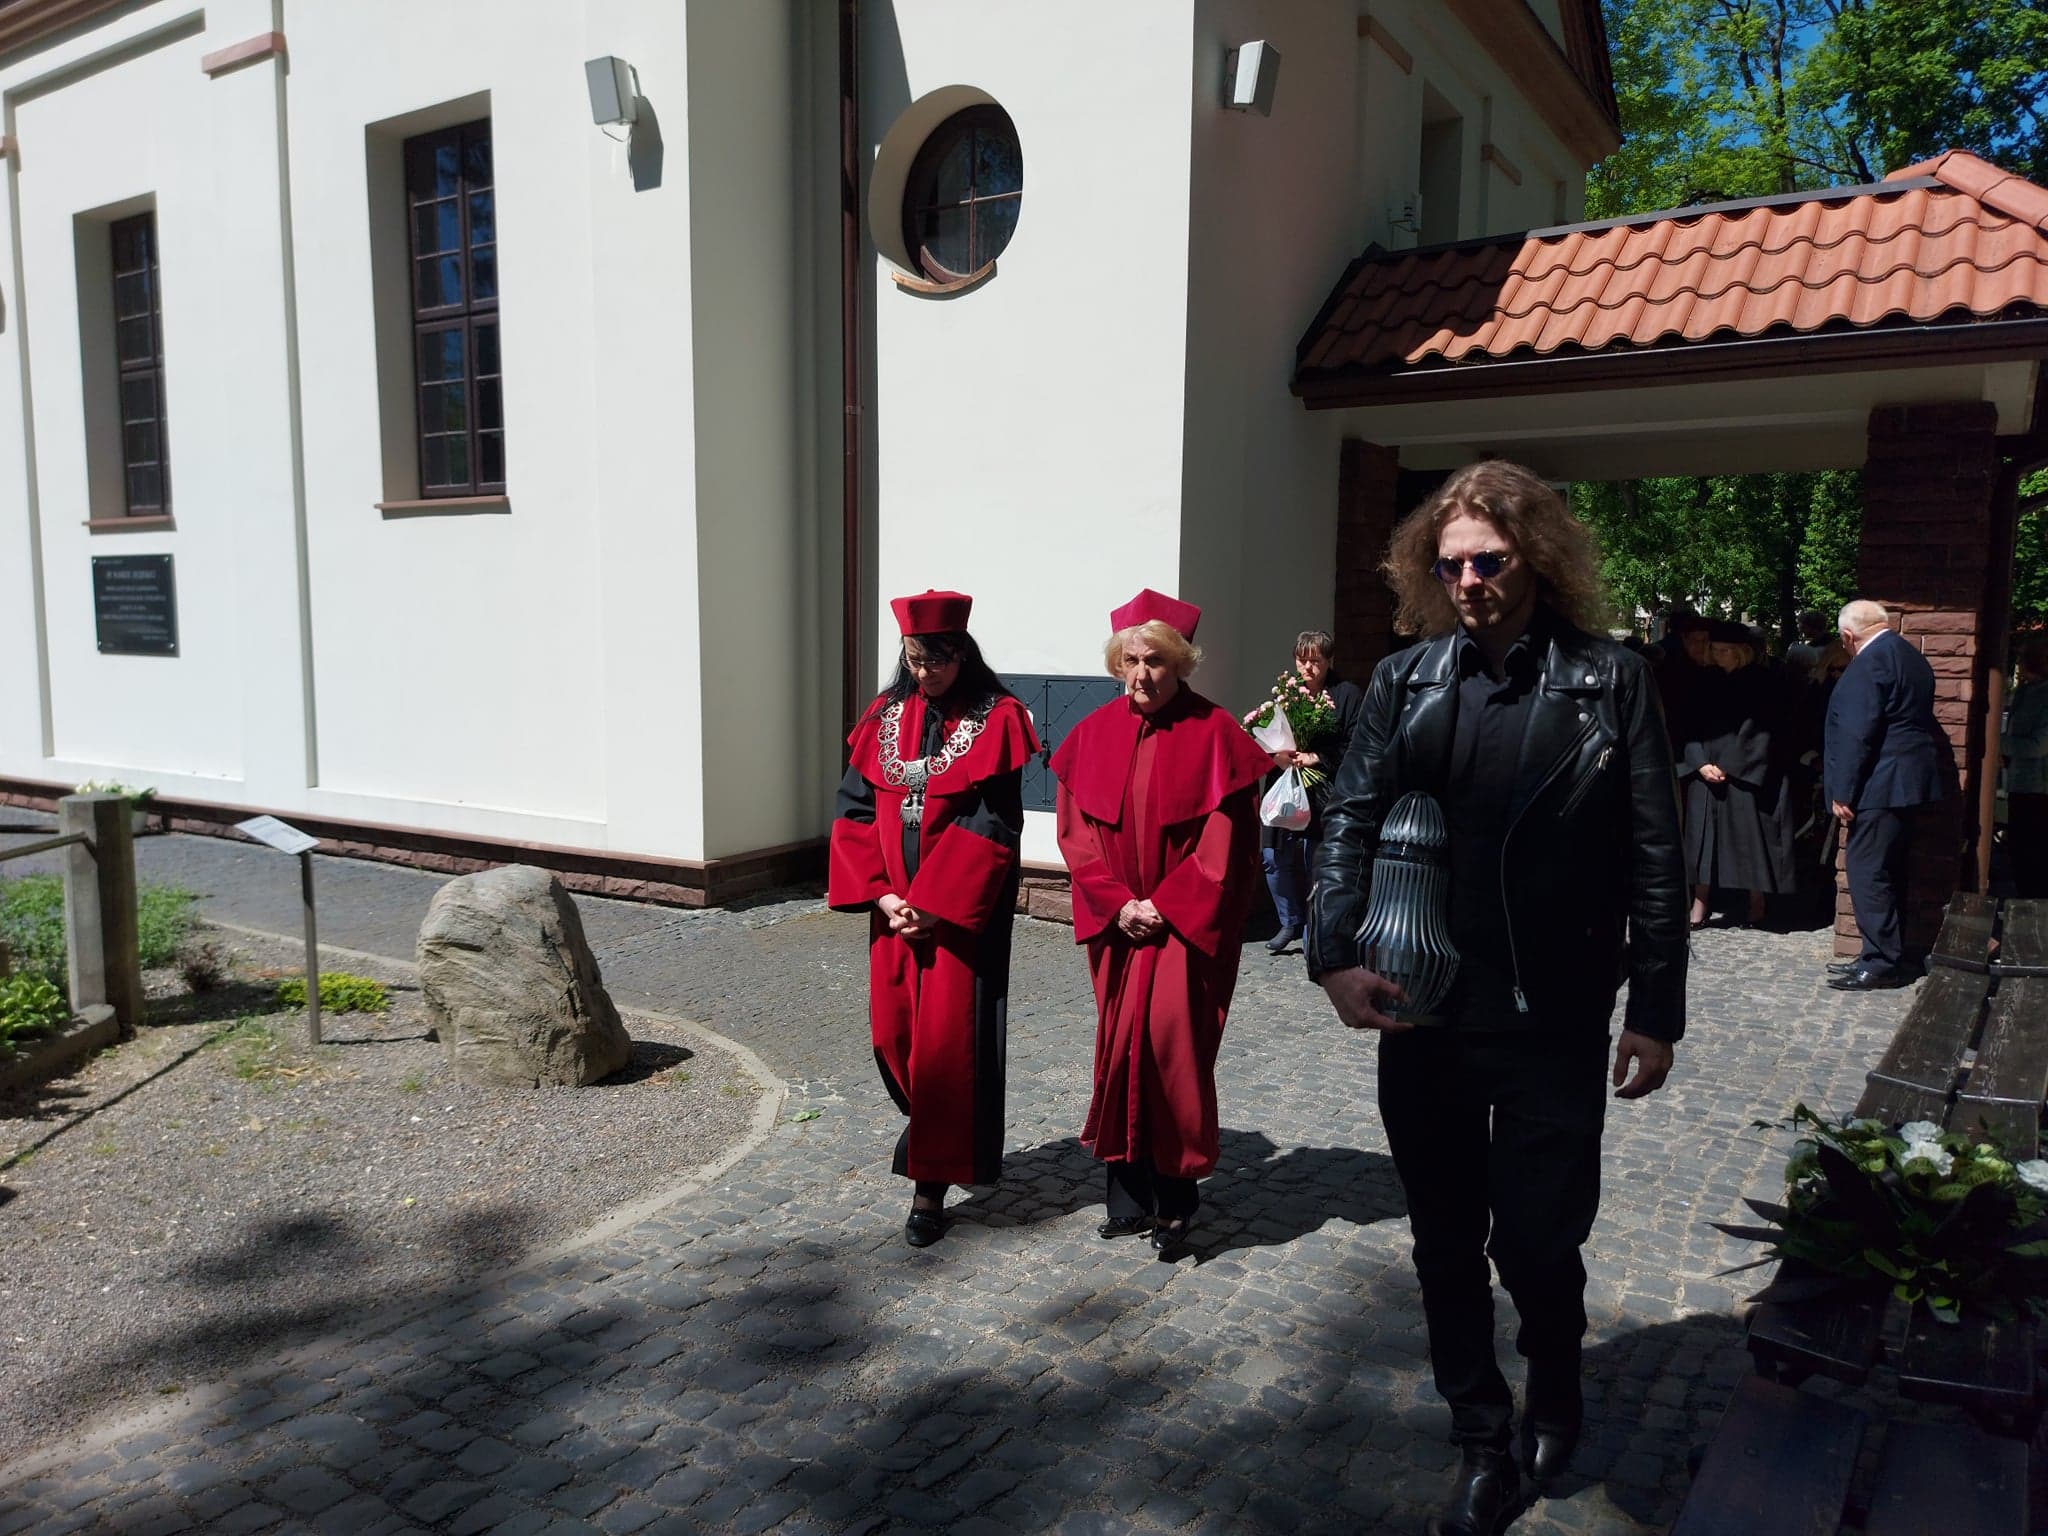 Wyjście konduktu z kaplicy. W togach przedstawiciele władz Uniwersytetu Jana Kochanowskiego.